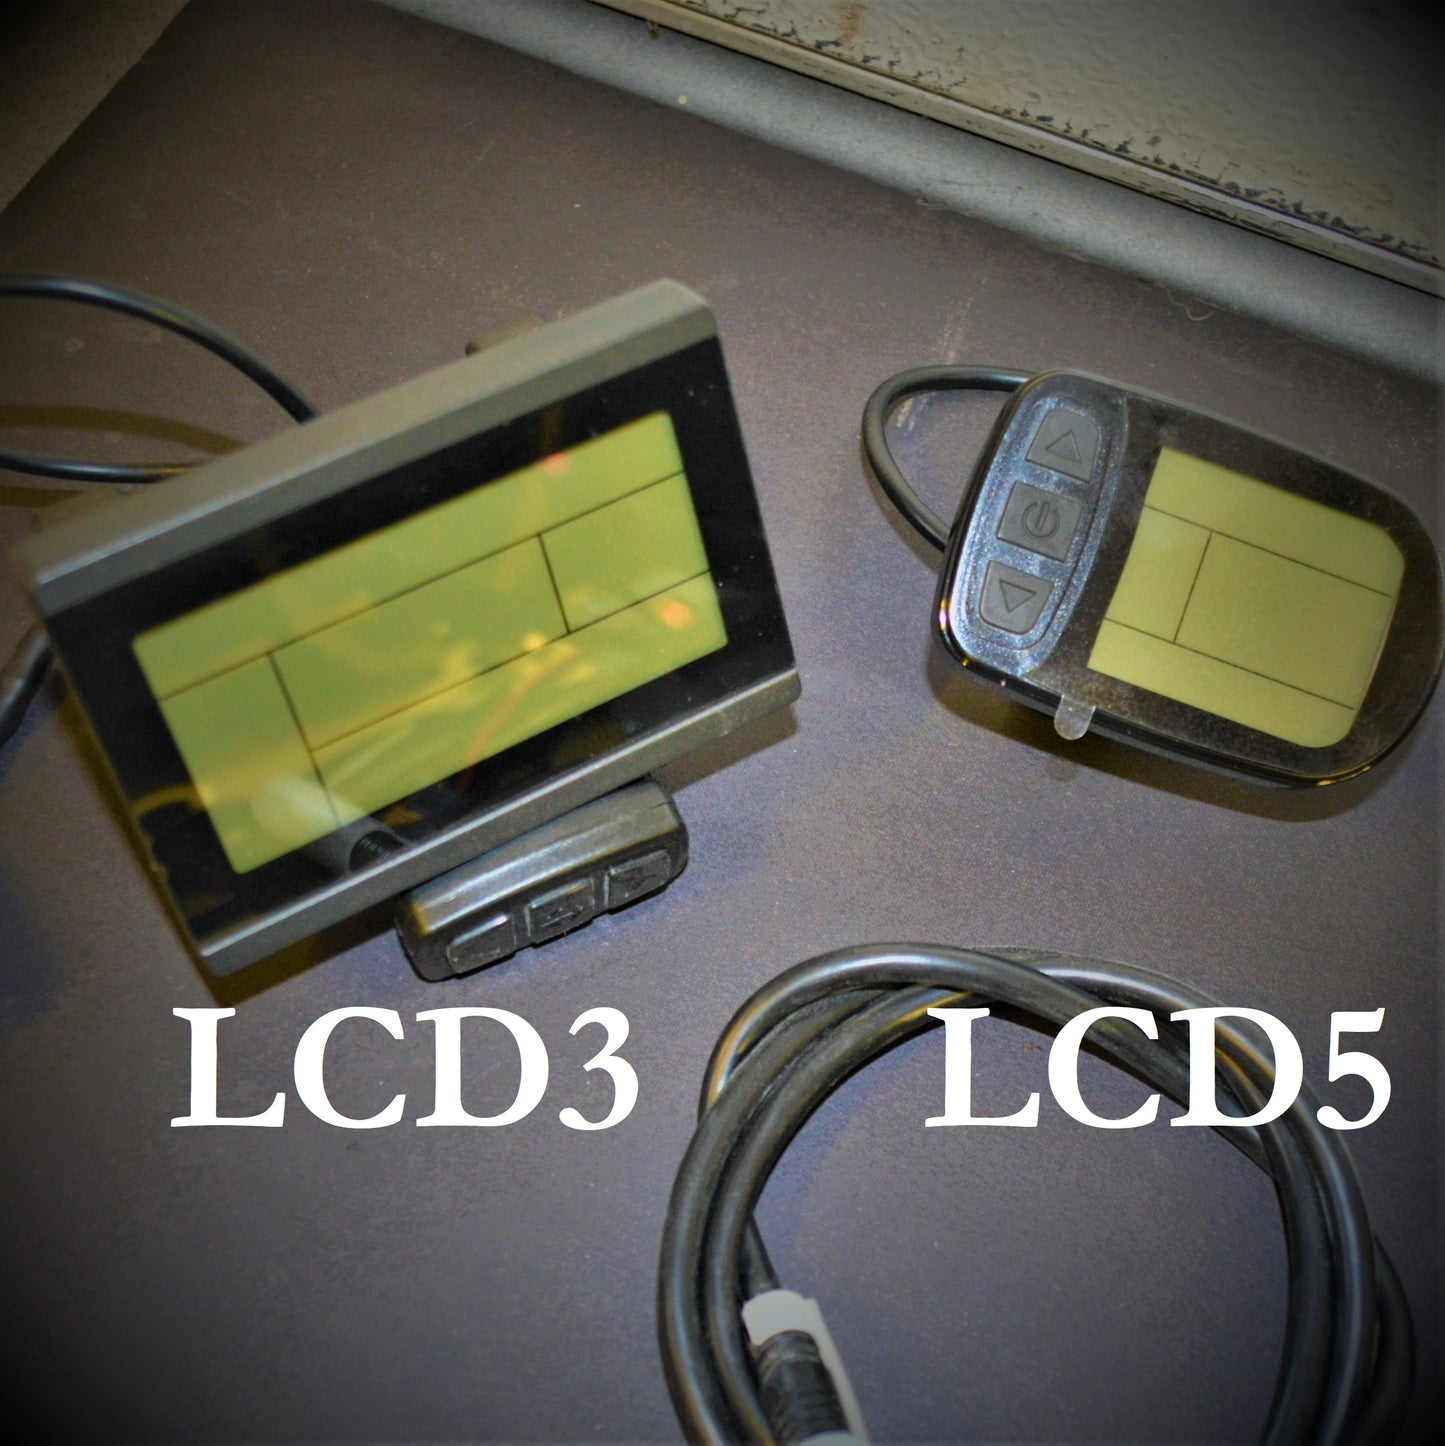 Configuration complète du contrôle - Contrôleur + LCD + Accessoires